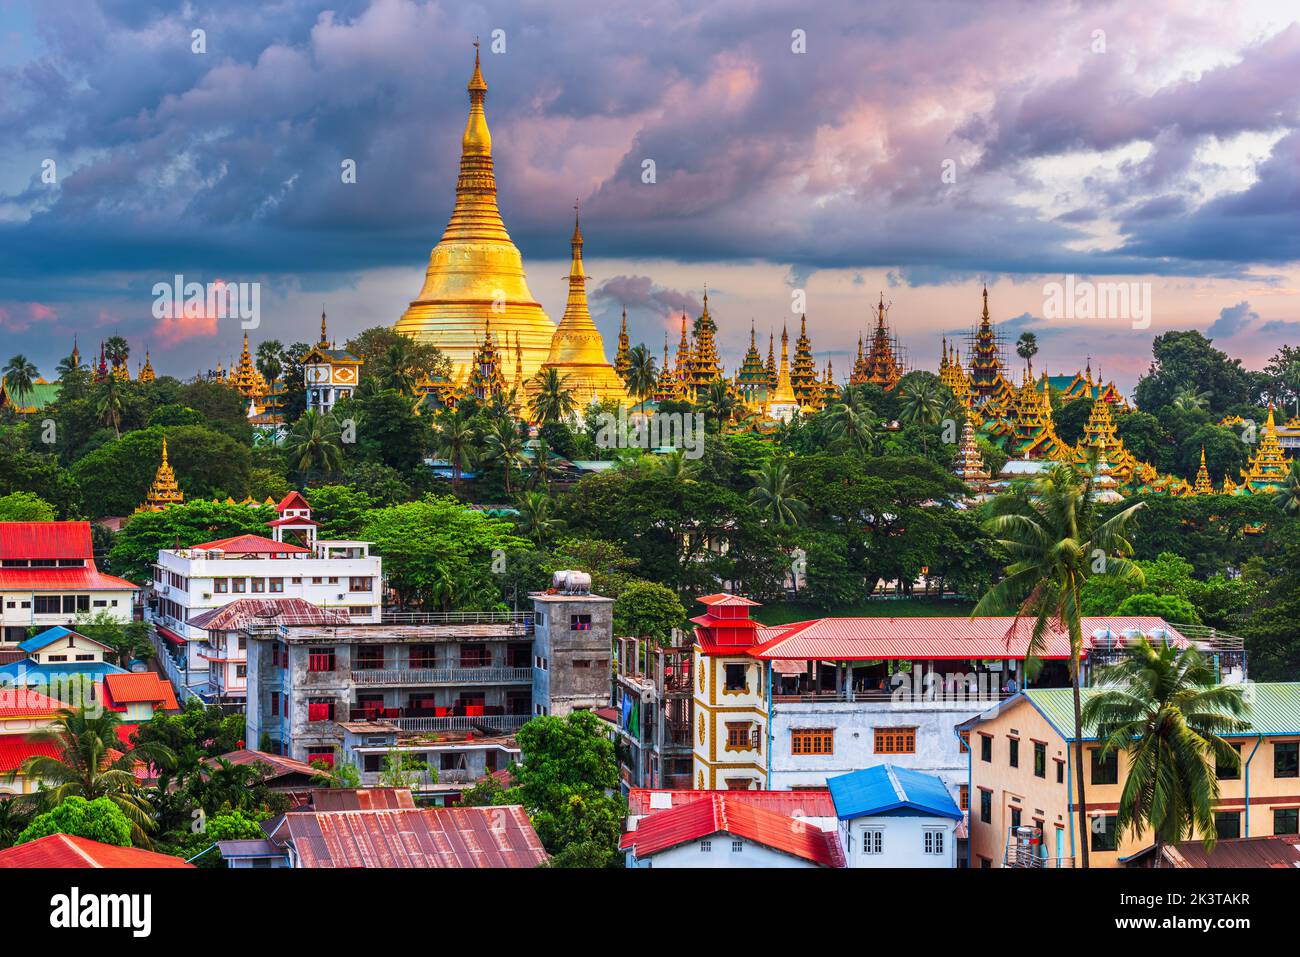 Yangon, Myanmar view of Shwedagon Pagoda at dusk. Stock Photo